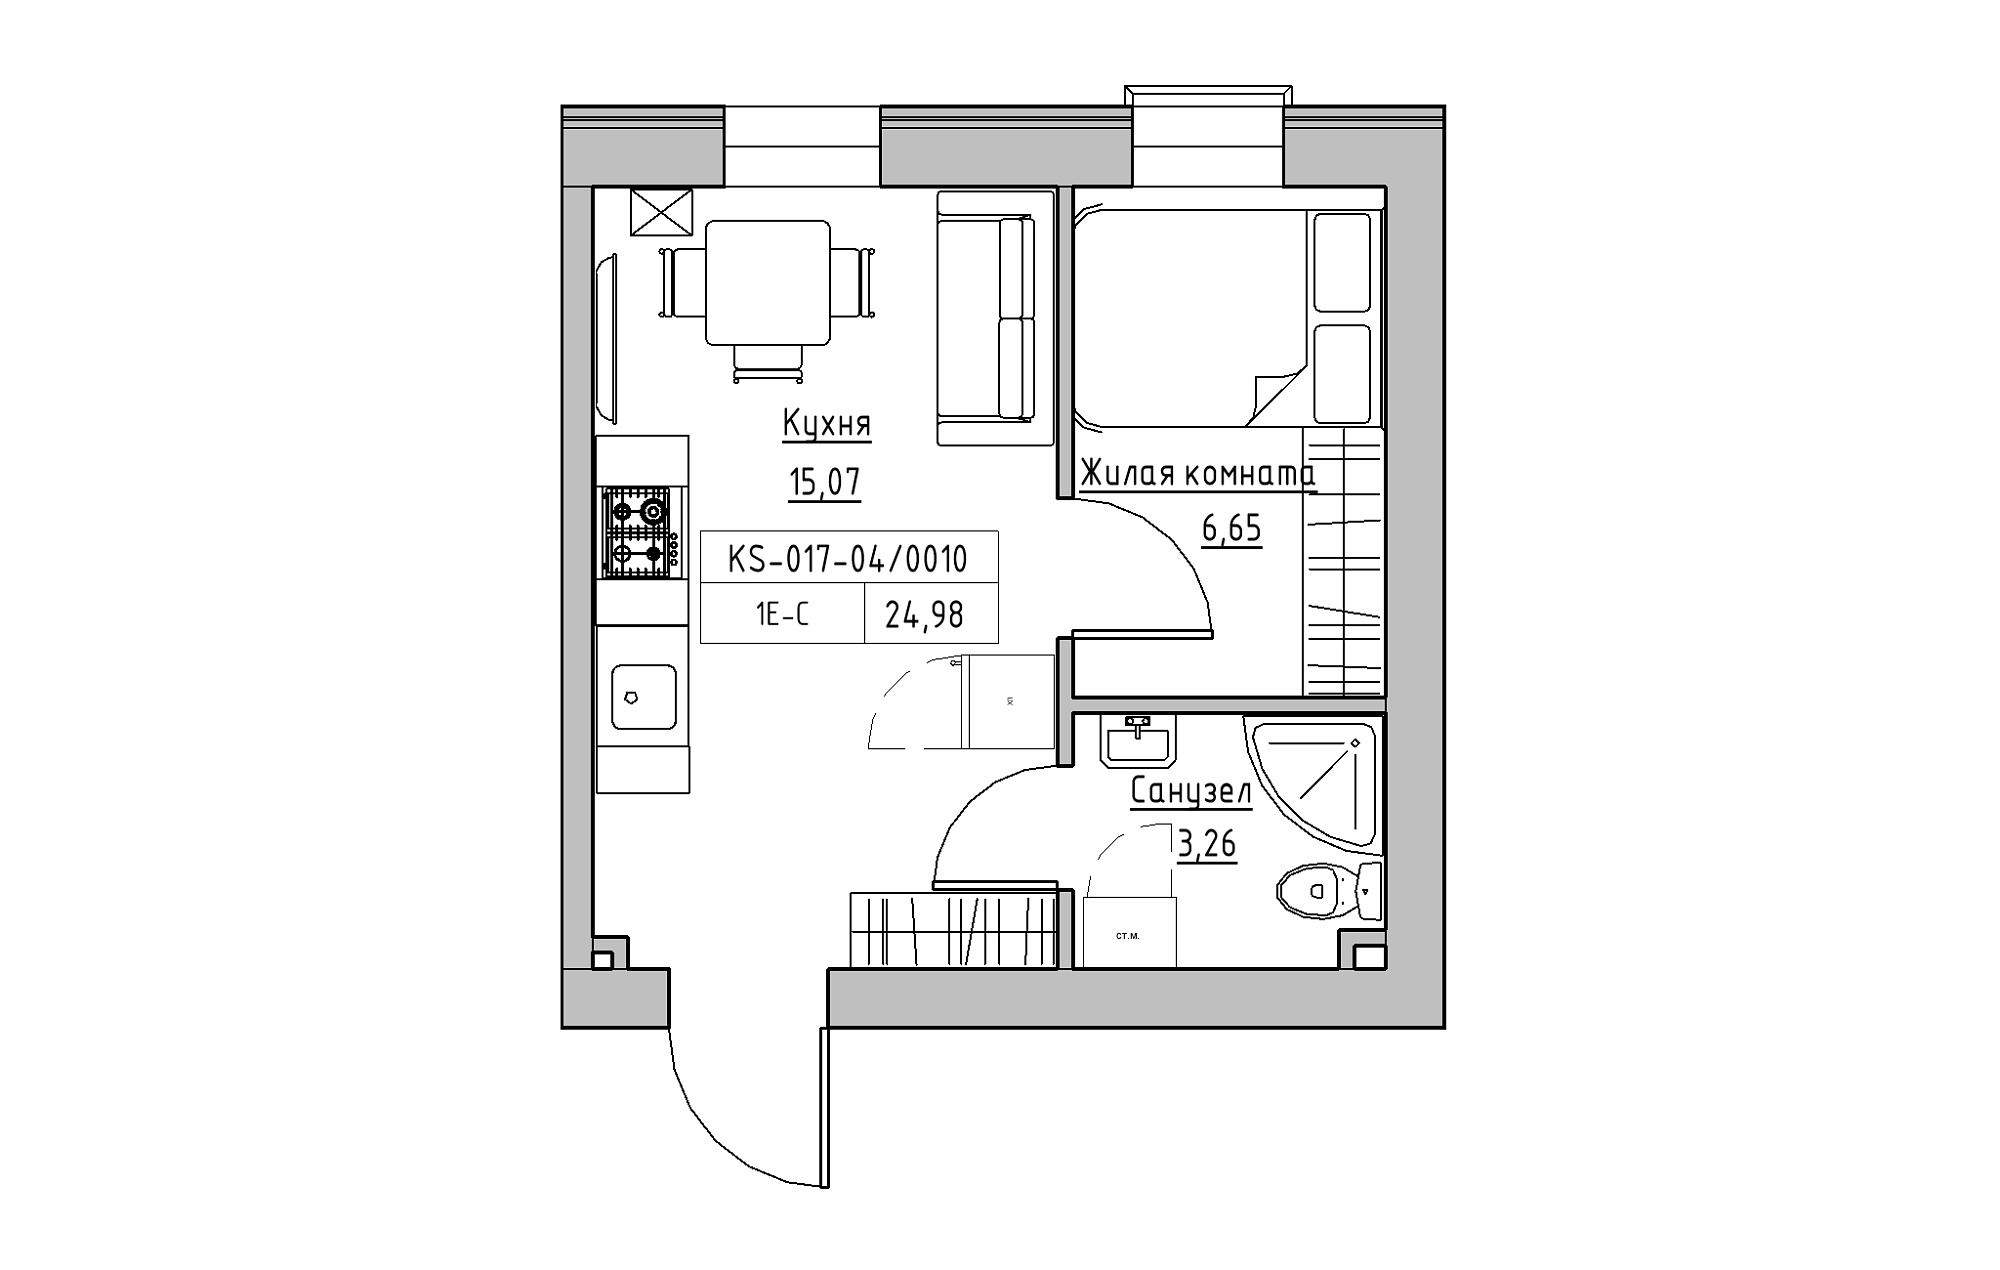 Планировка 1-к квартира площей 24.98м2, KS-017-04/0010.